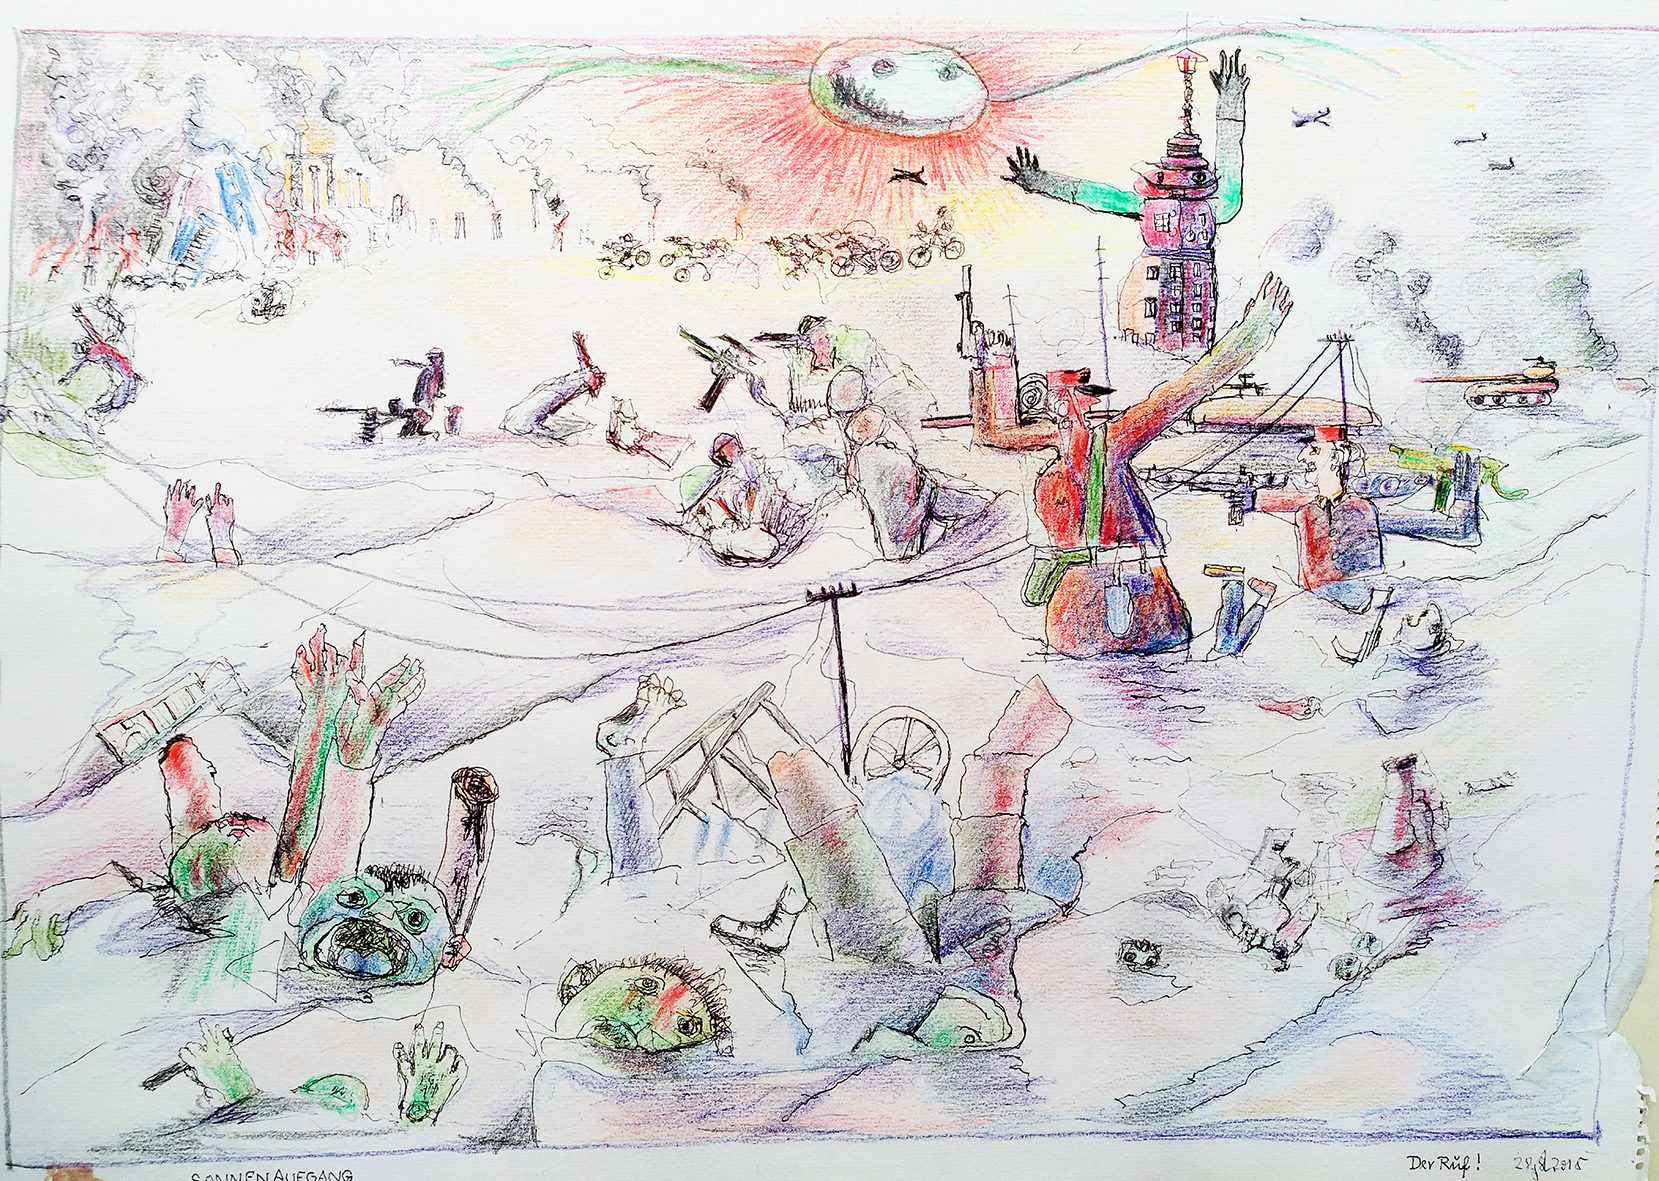 Sonnenaufgang, 2015. Watercolor pen, ink on paper. 45,5 x 64 cm, framed.